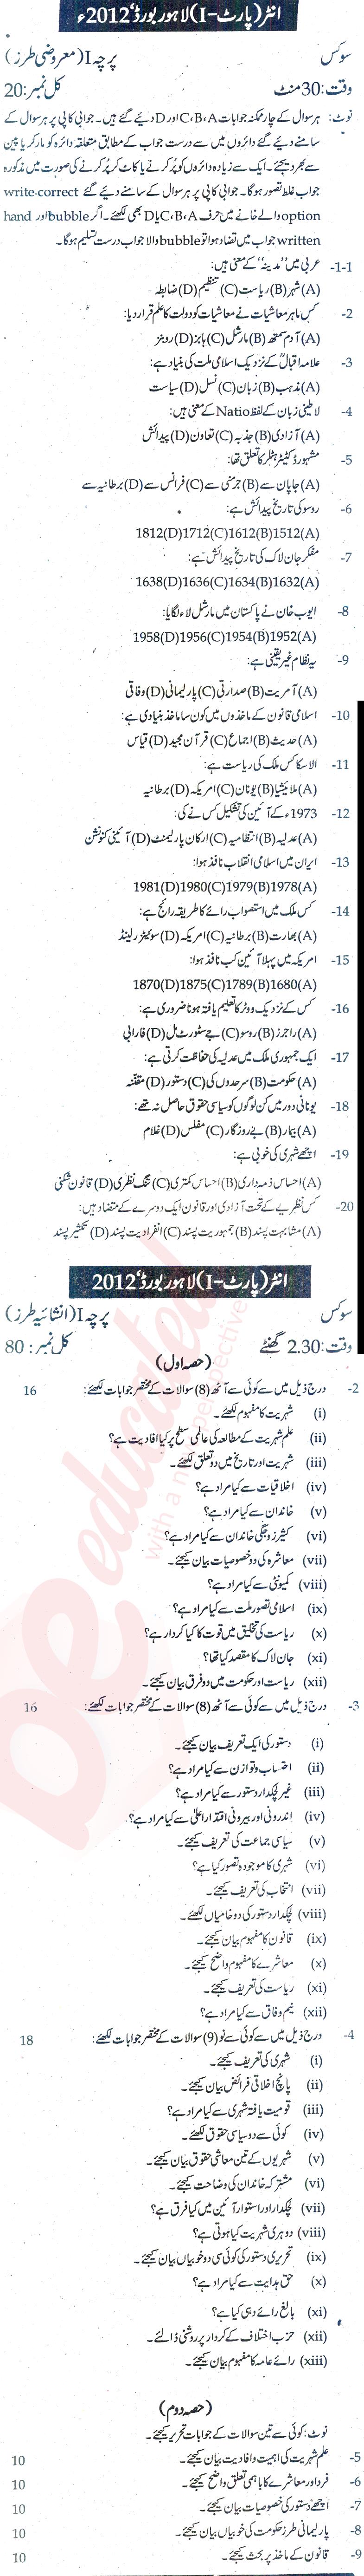 Civics FA Part 1 Past Paper Group 1 BISE Lahore 2012